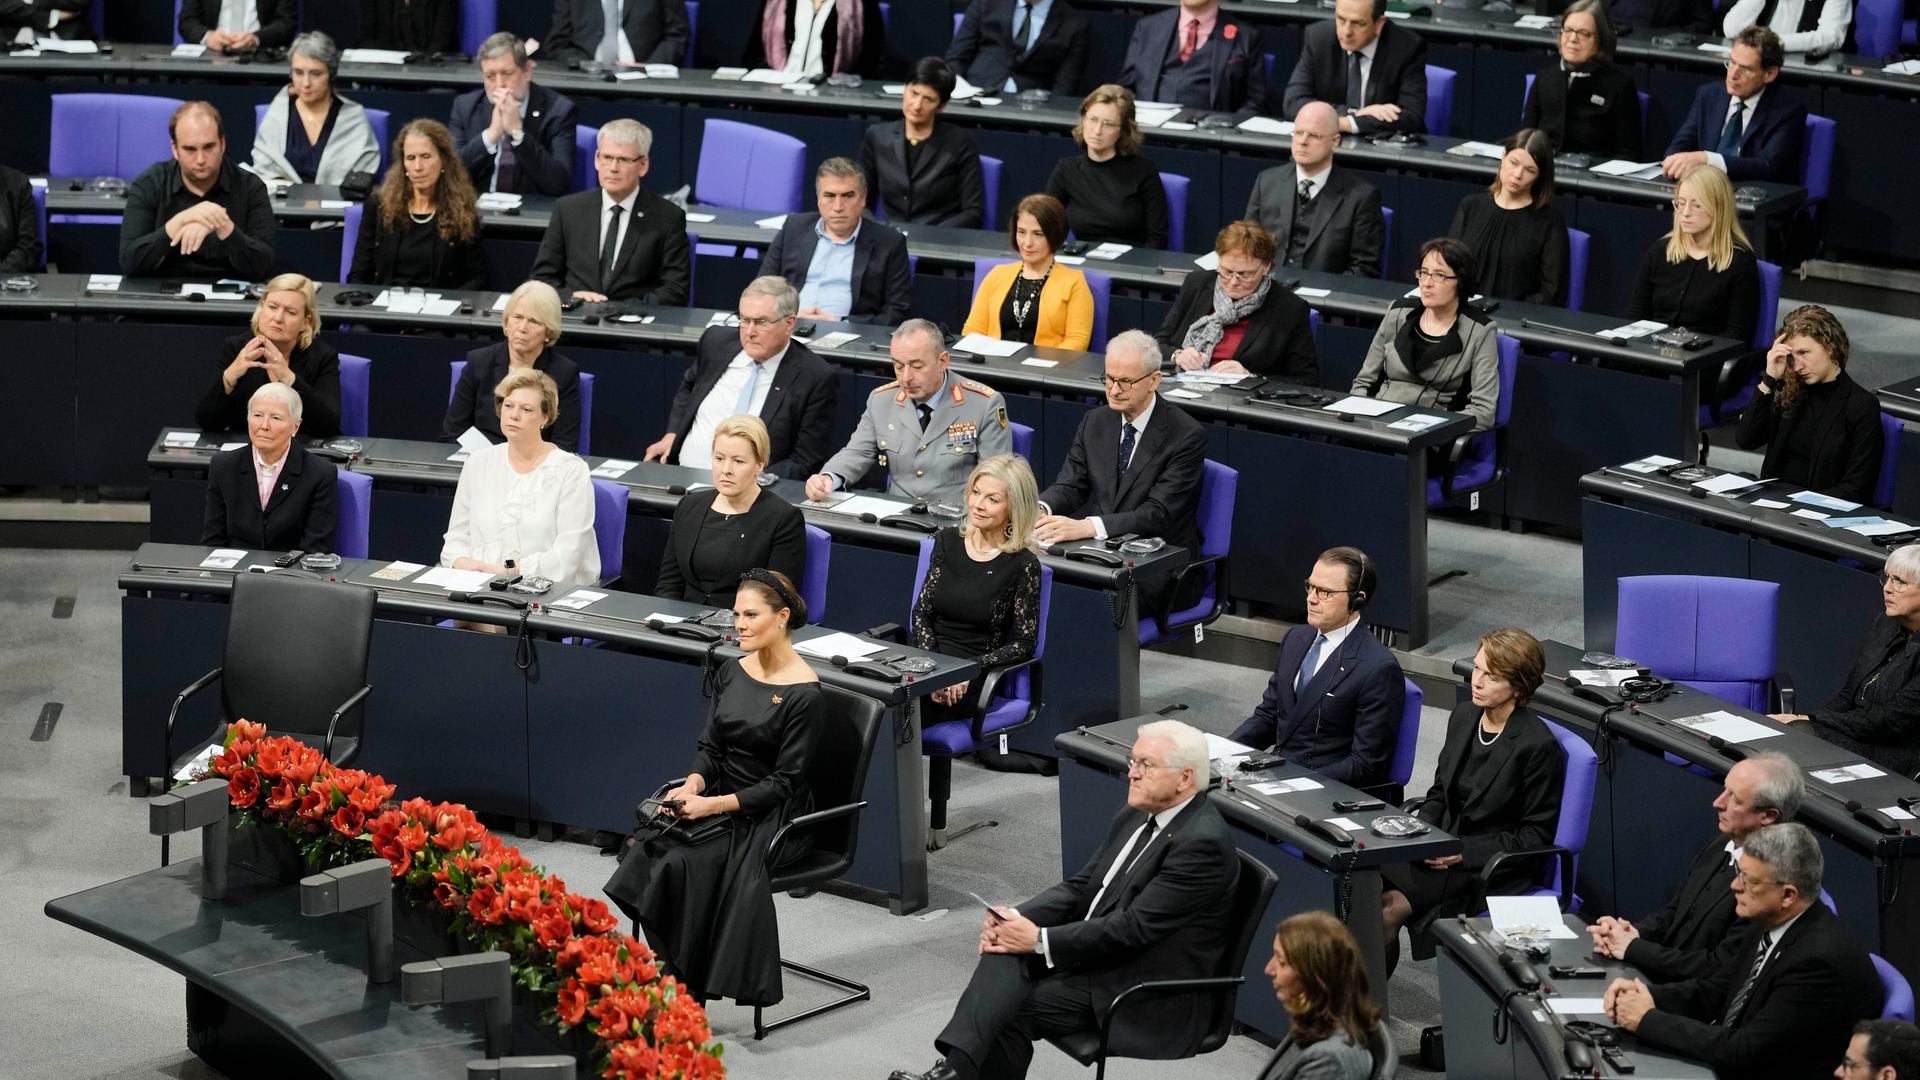 Kronprinzessin Victoria von Schweden und Bundespräsident Steinmeier sitzen während der Gedenkstunde im Bundestag in der Mitte des Plenarsaals.